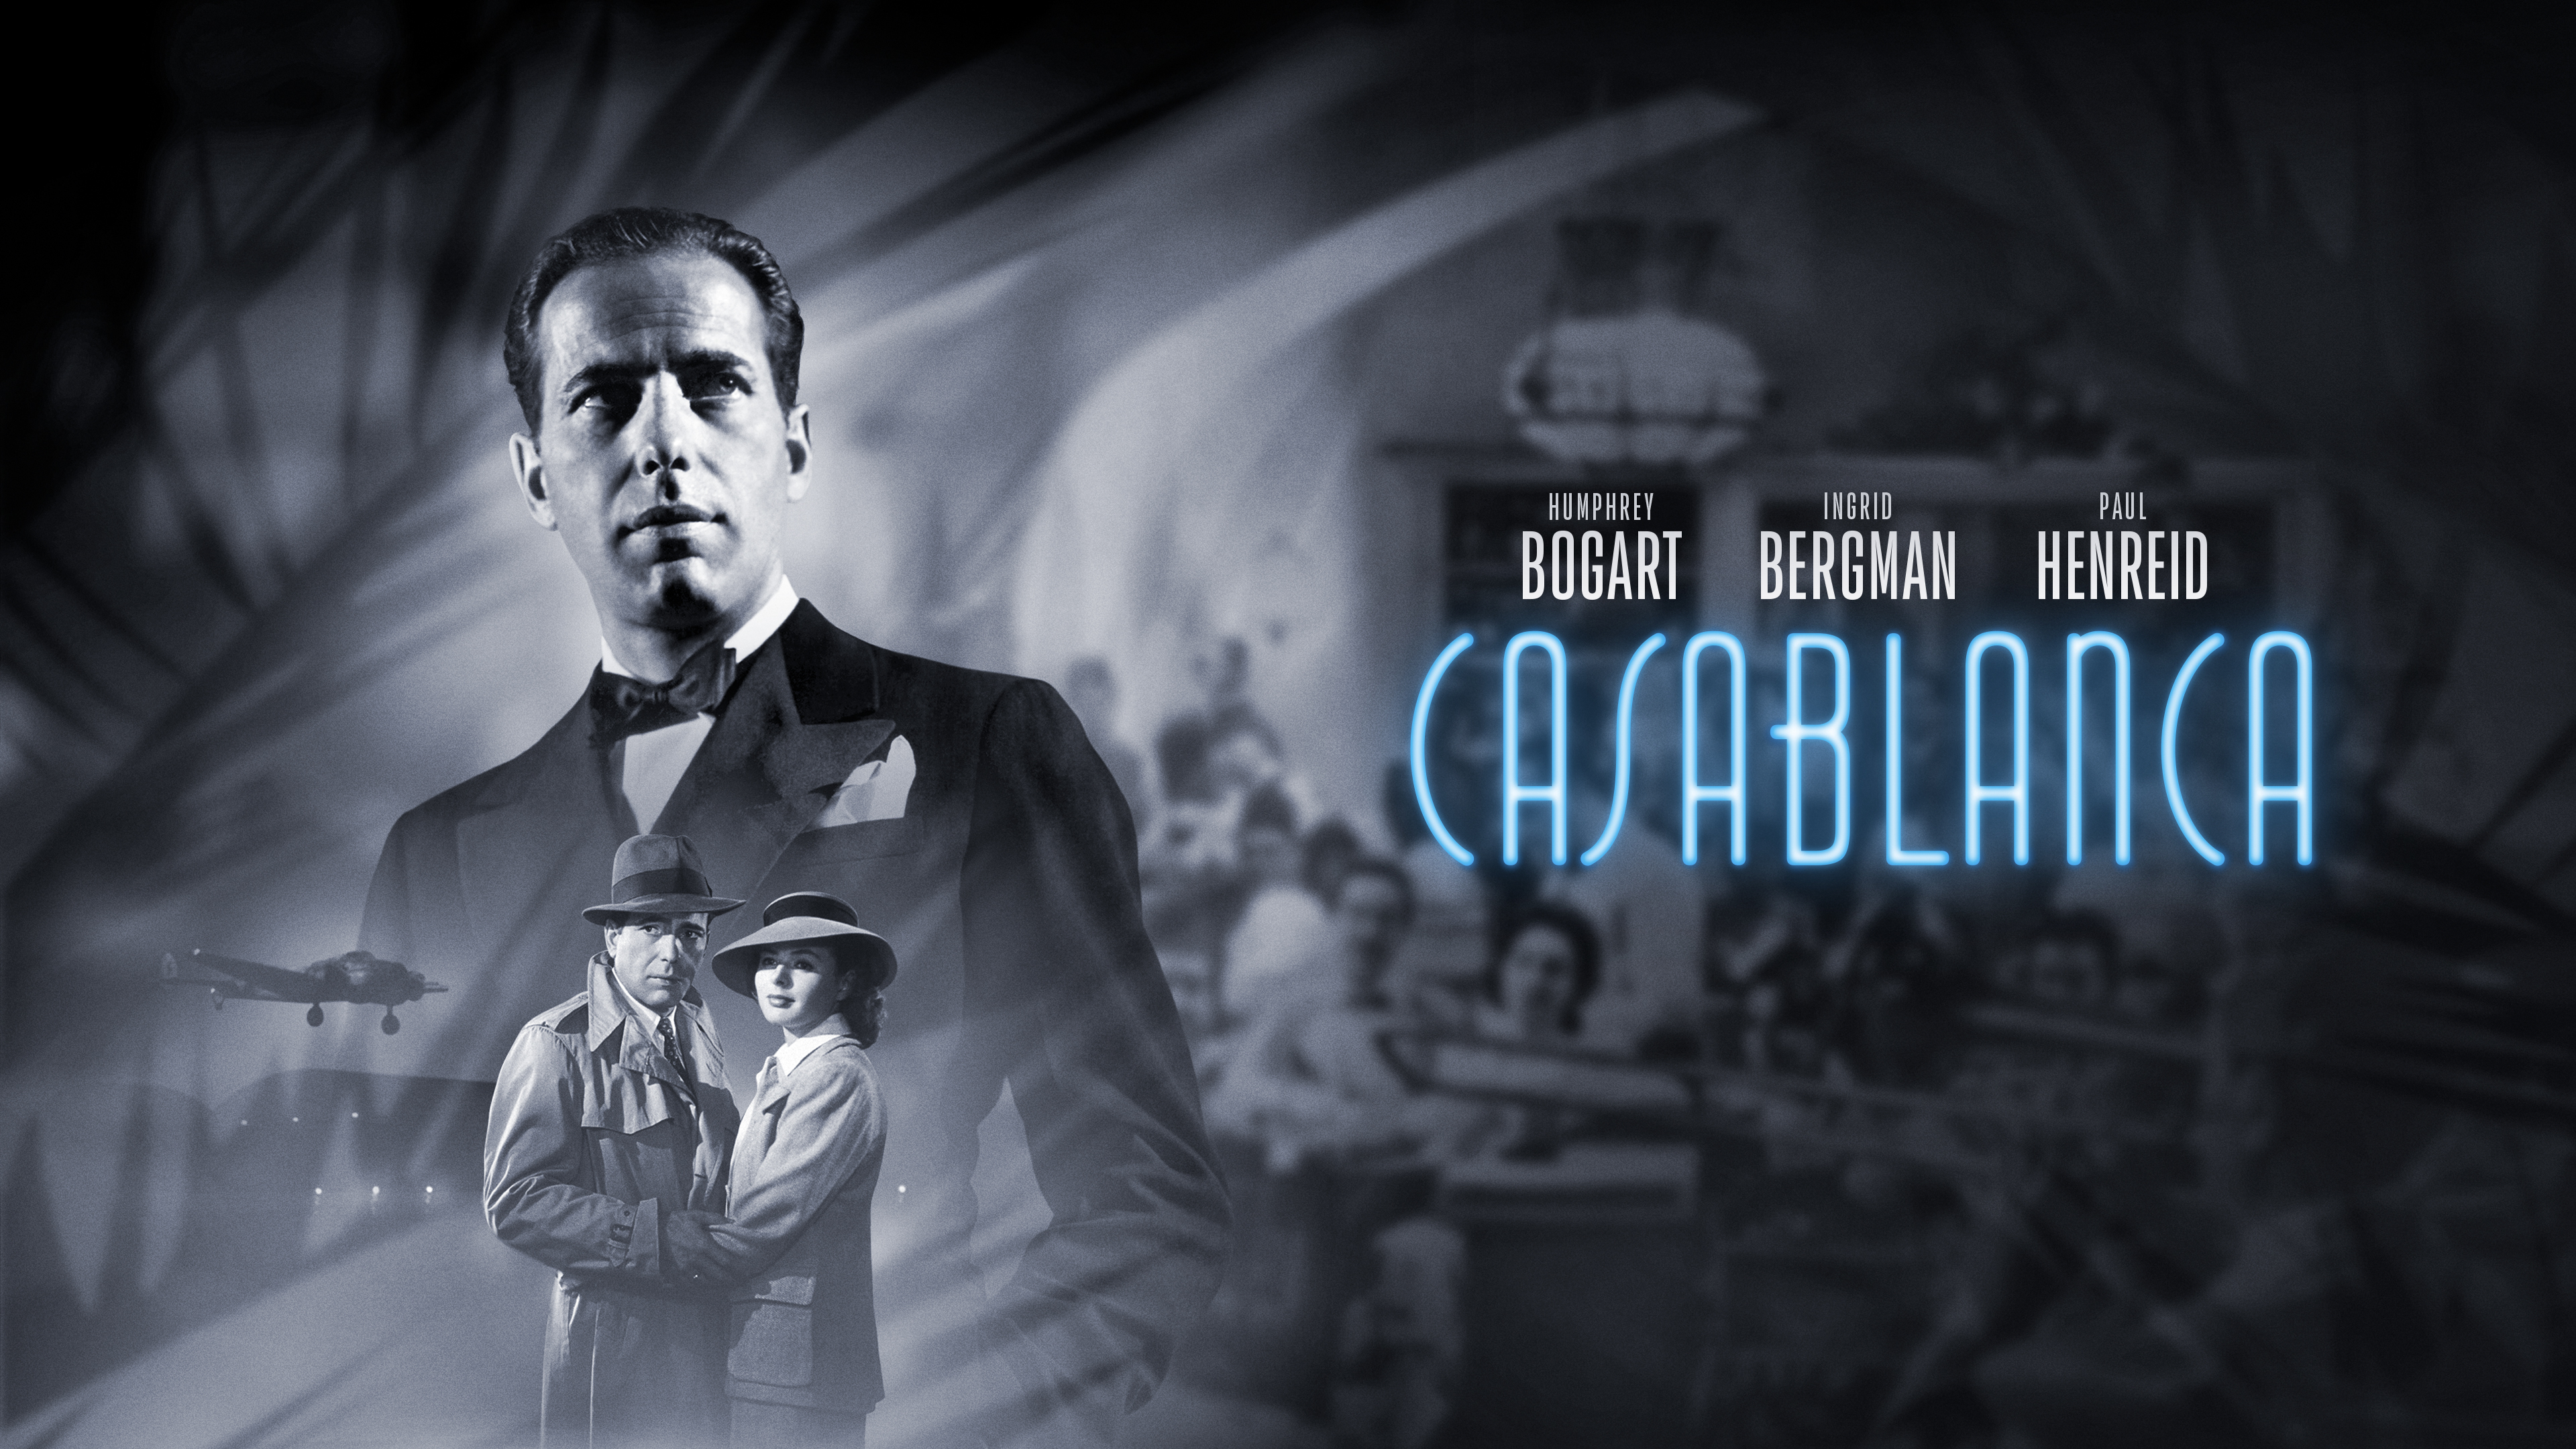 Movie Casablanca 4k Ultra HD Wallpaper